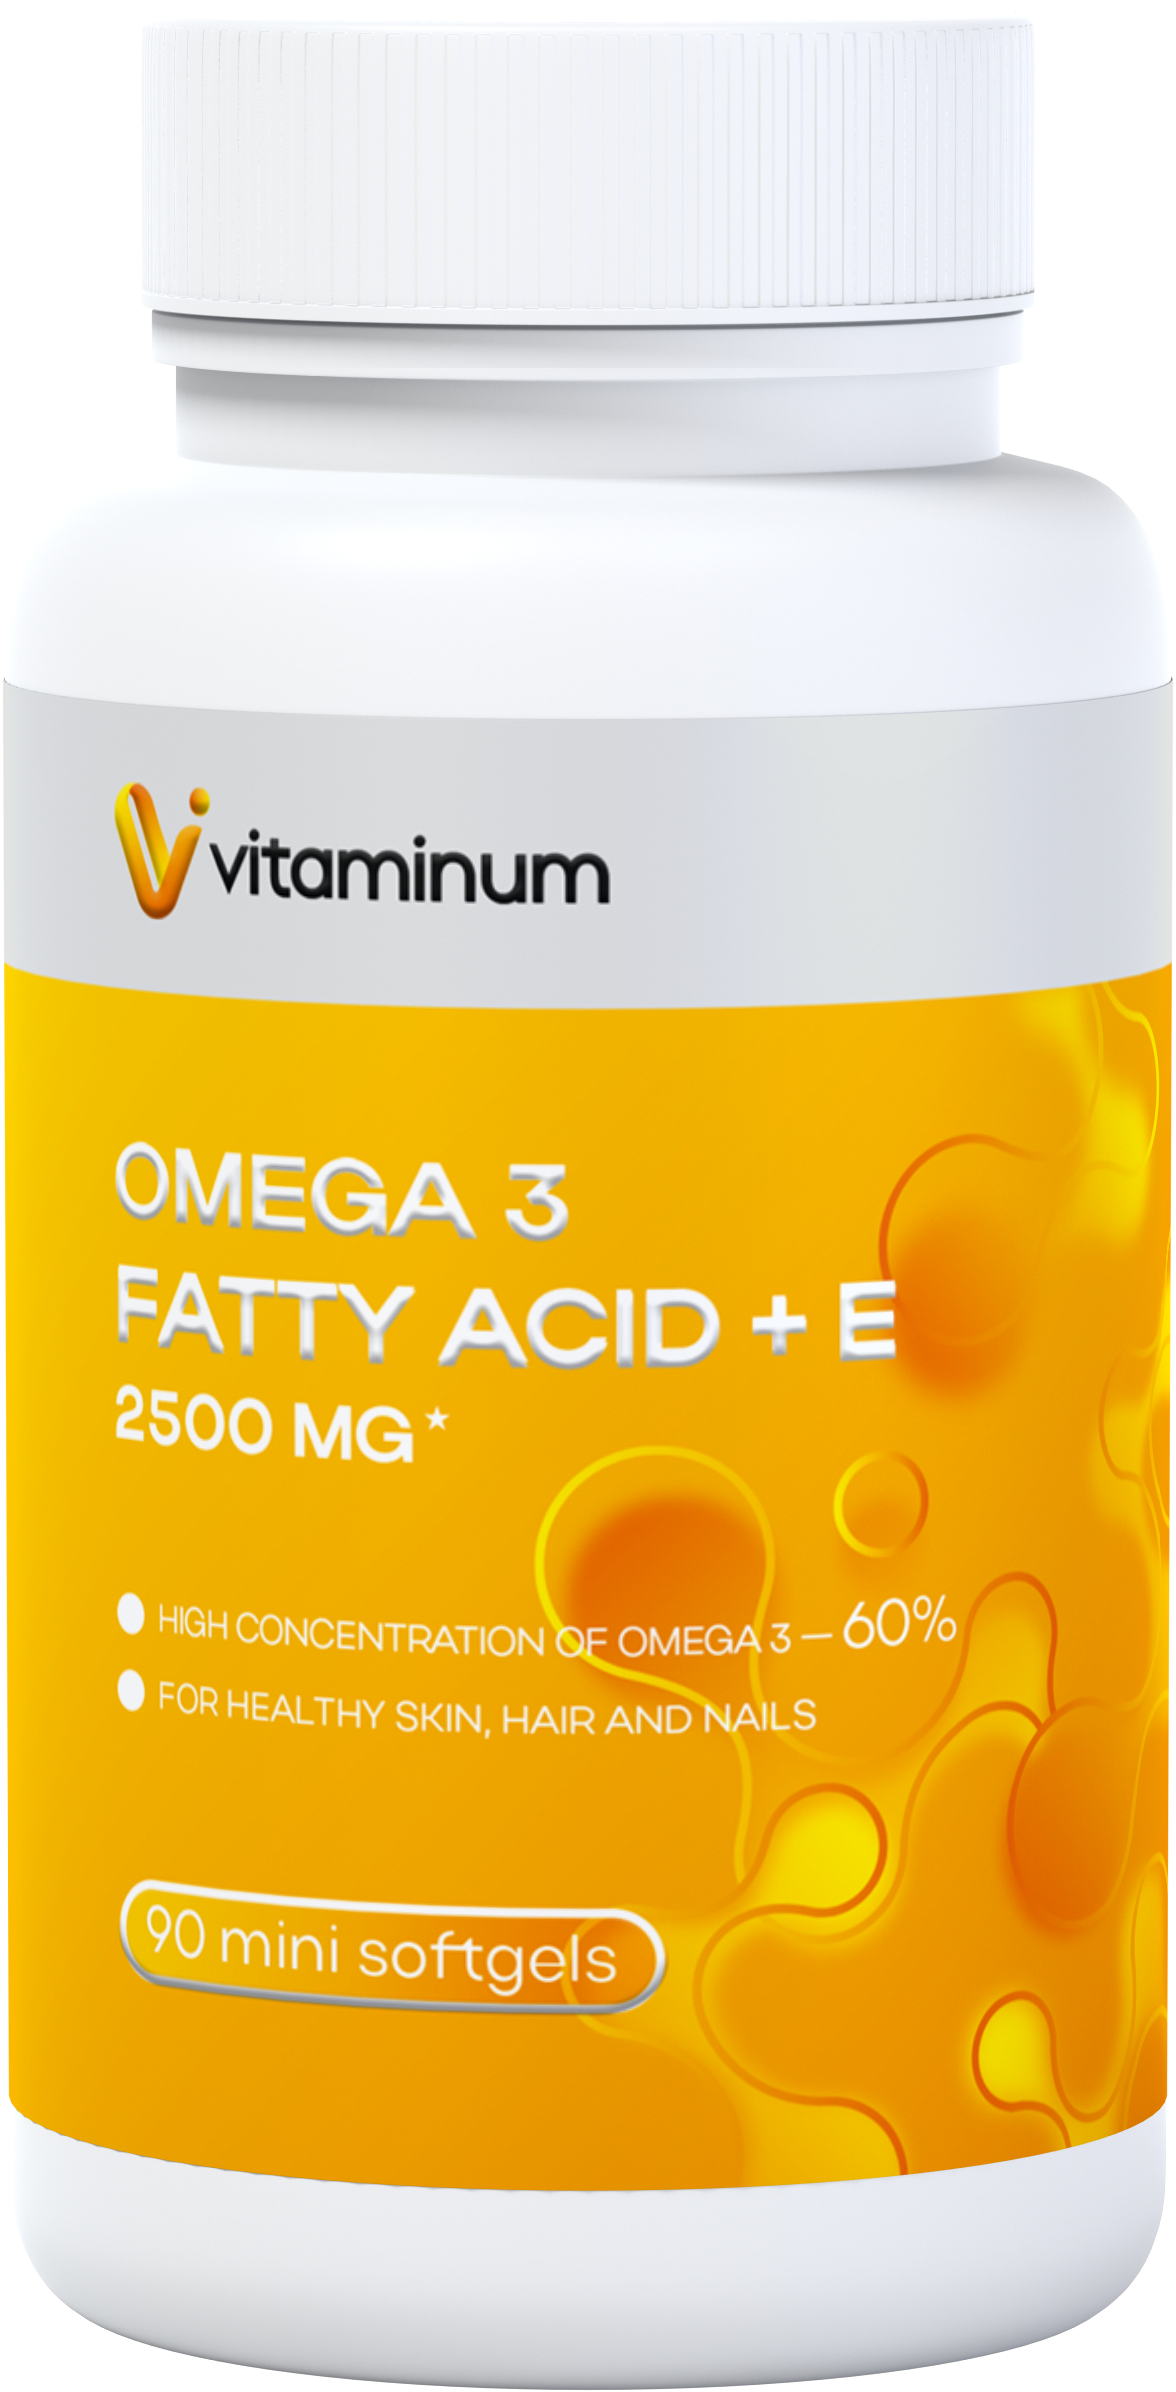  Vitaminum ОМЕГА 3 60% + витамин Е (2500 MG*) 90 капсул 700 мг   в Воткинске